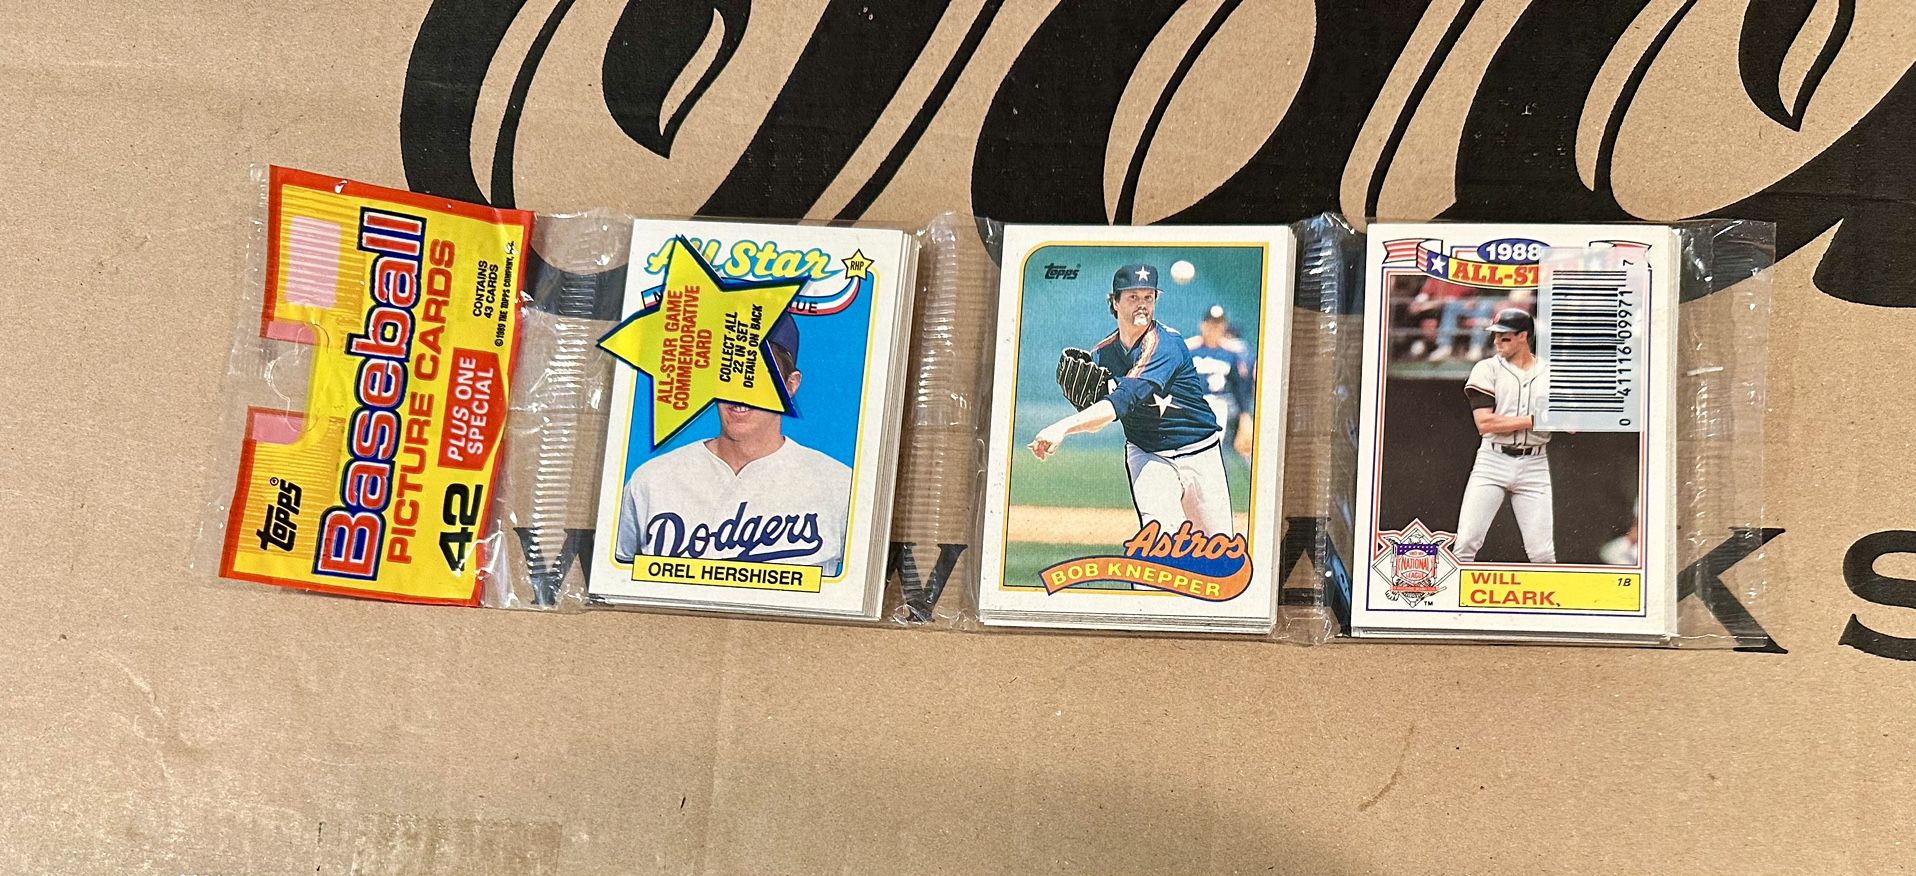 TOPPS 1989 Baseball Cards Rak Pak